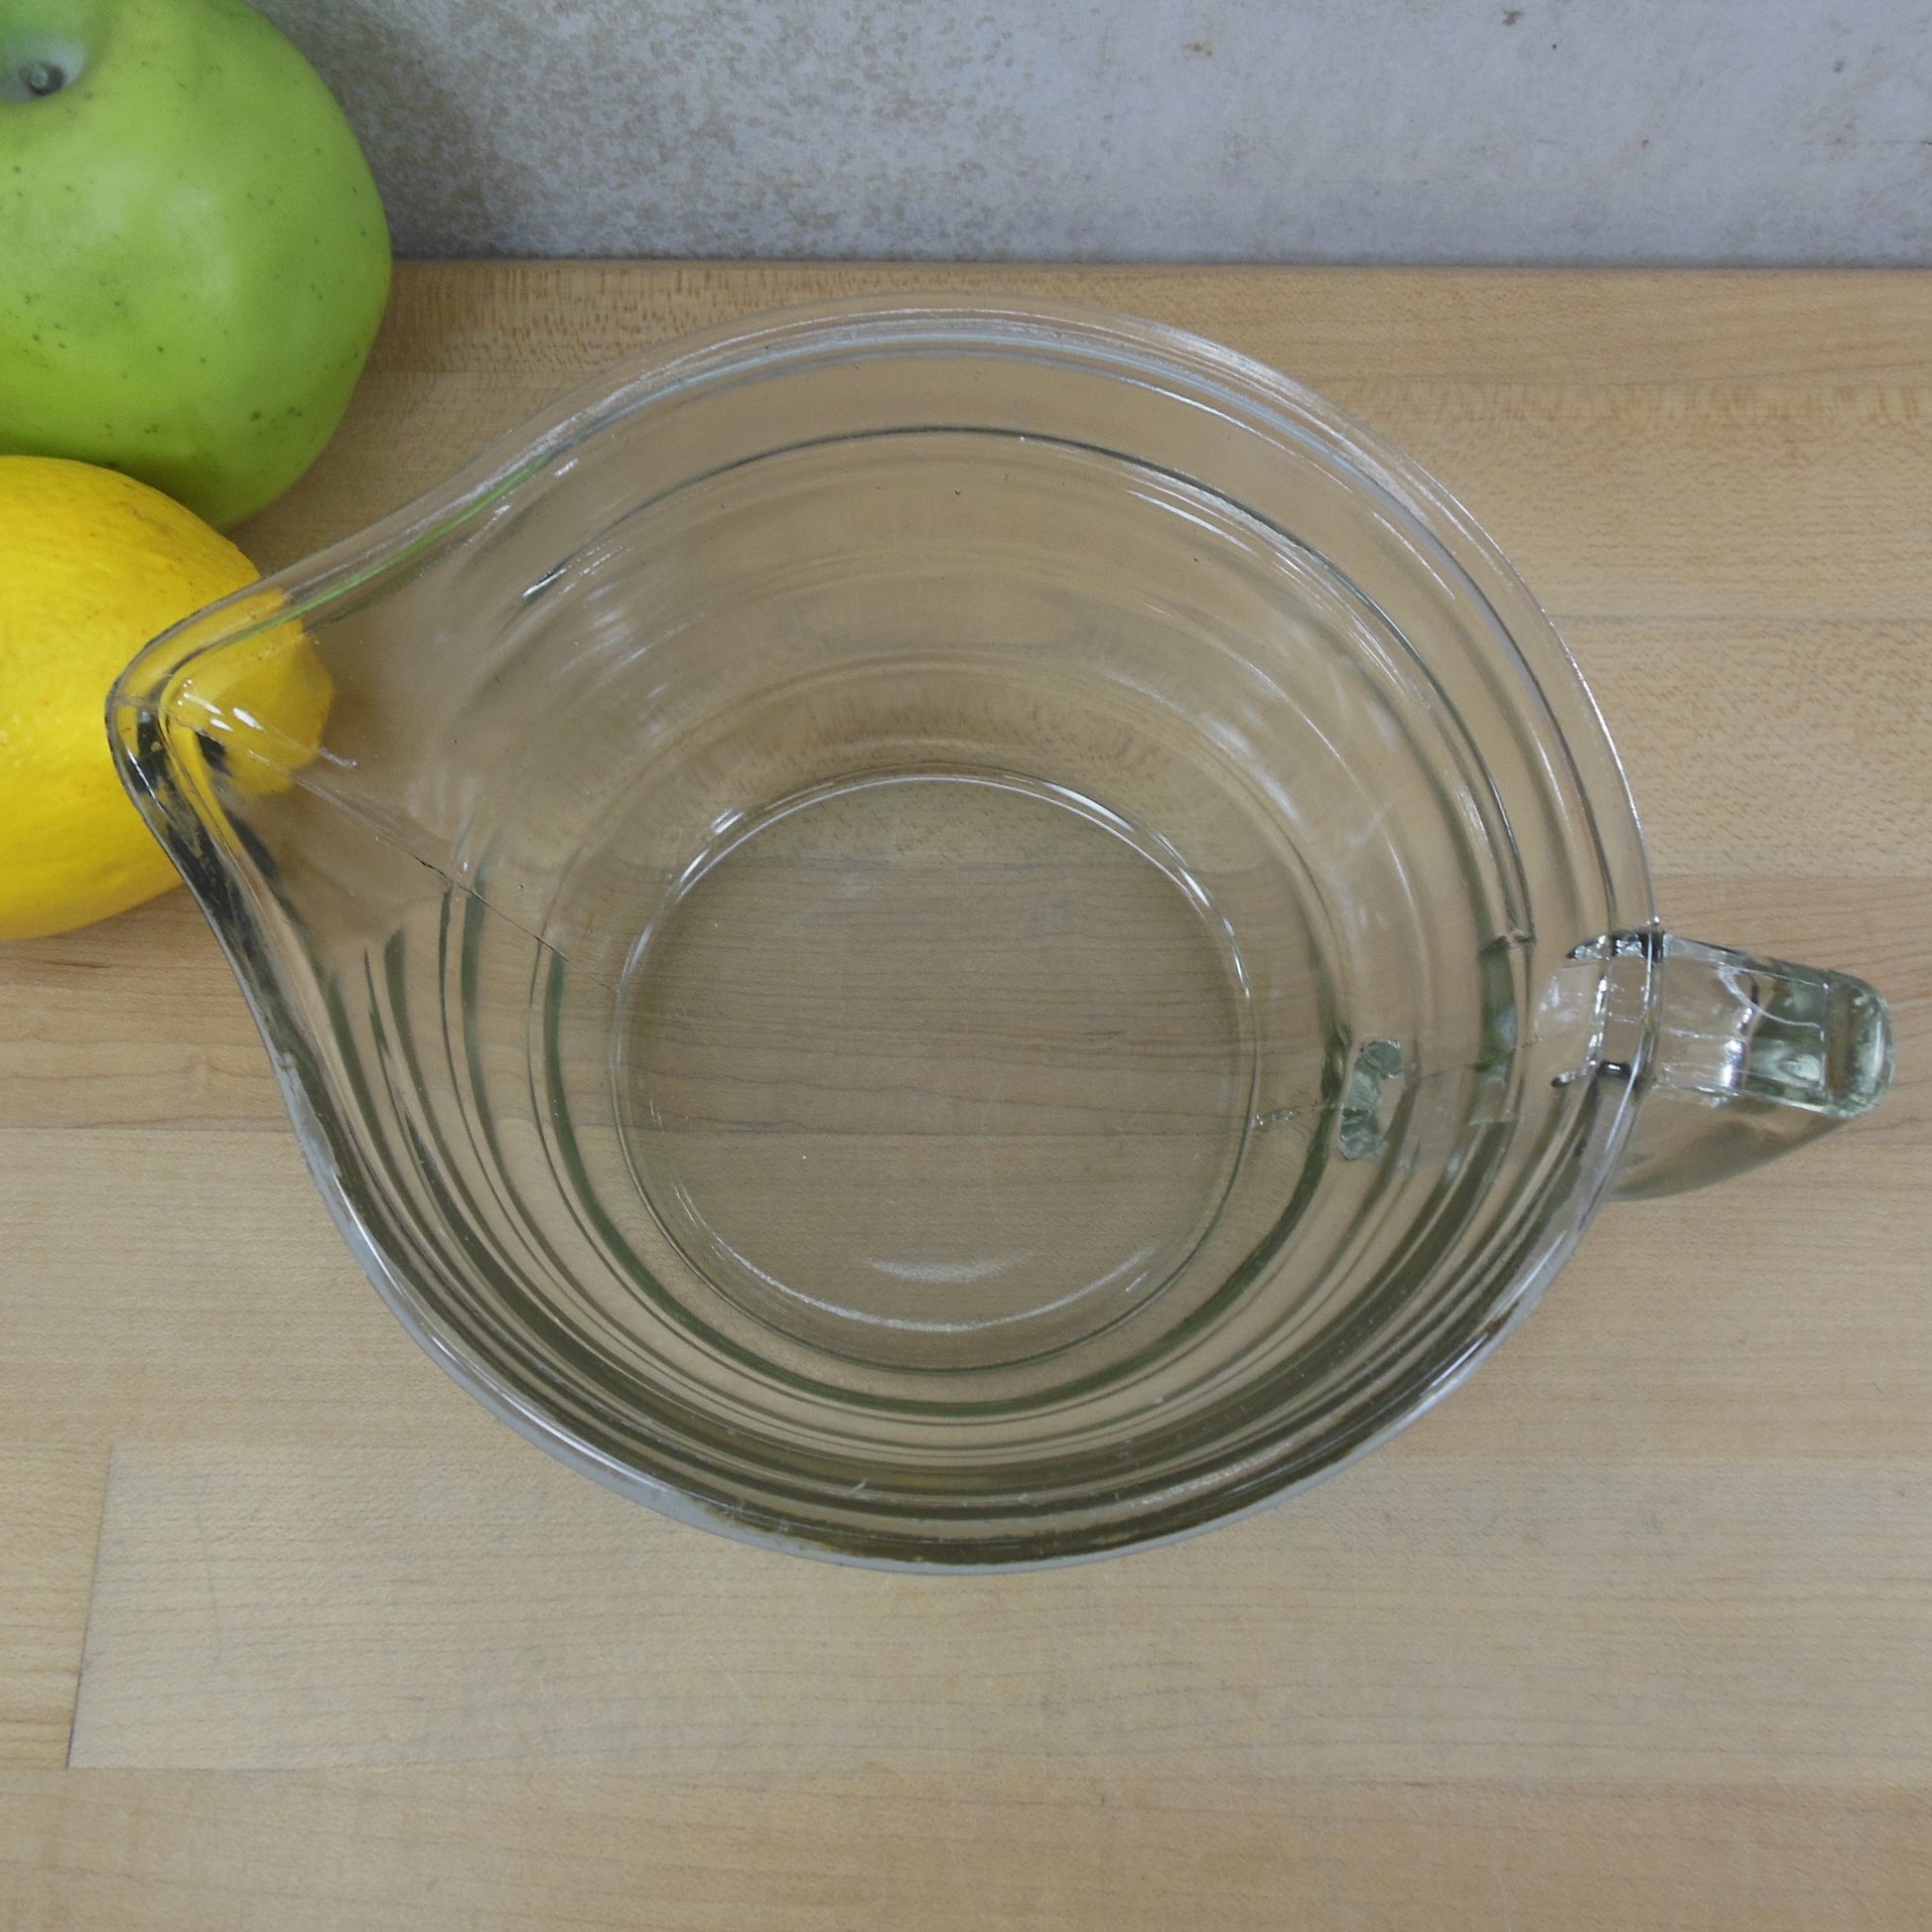 Unbranded Clear Glass Beehive Reamer Juicer Base Bowl vintage